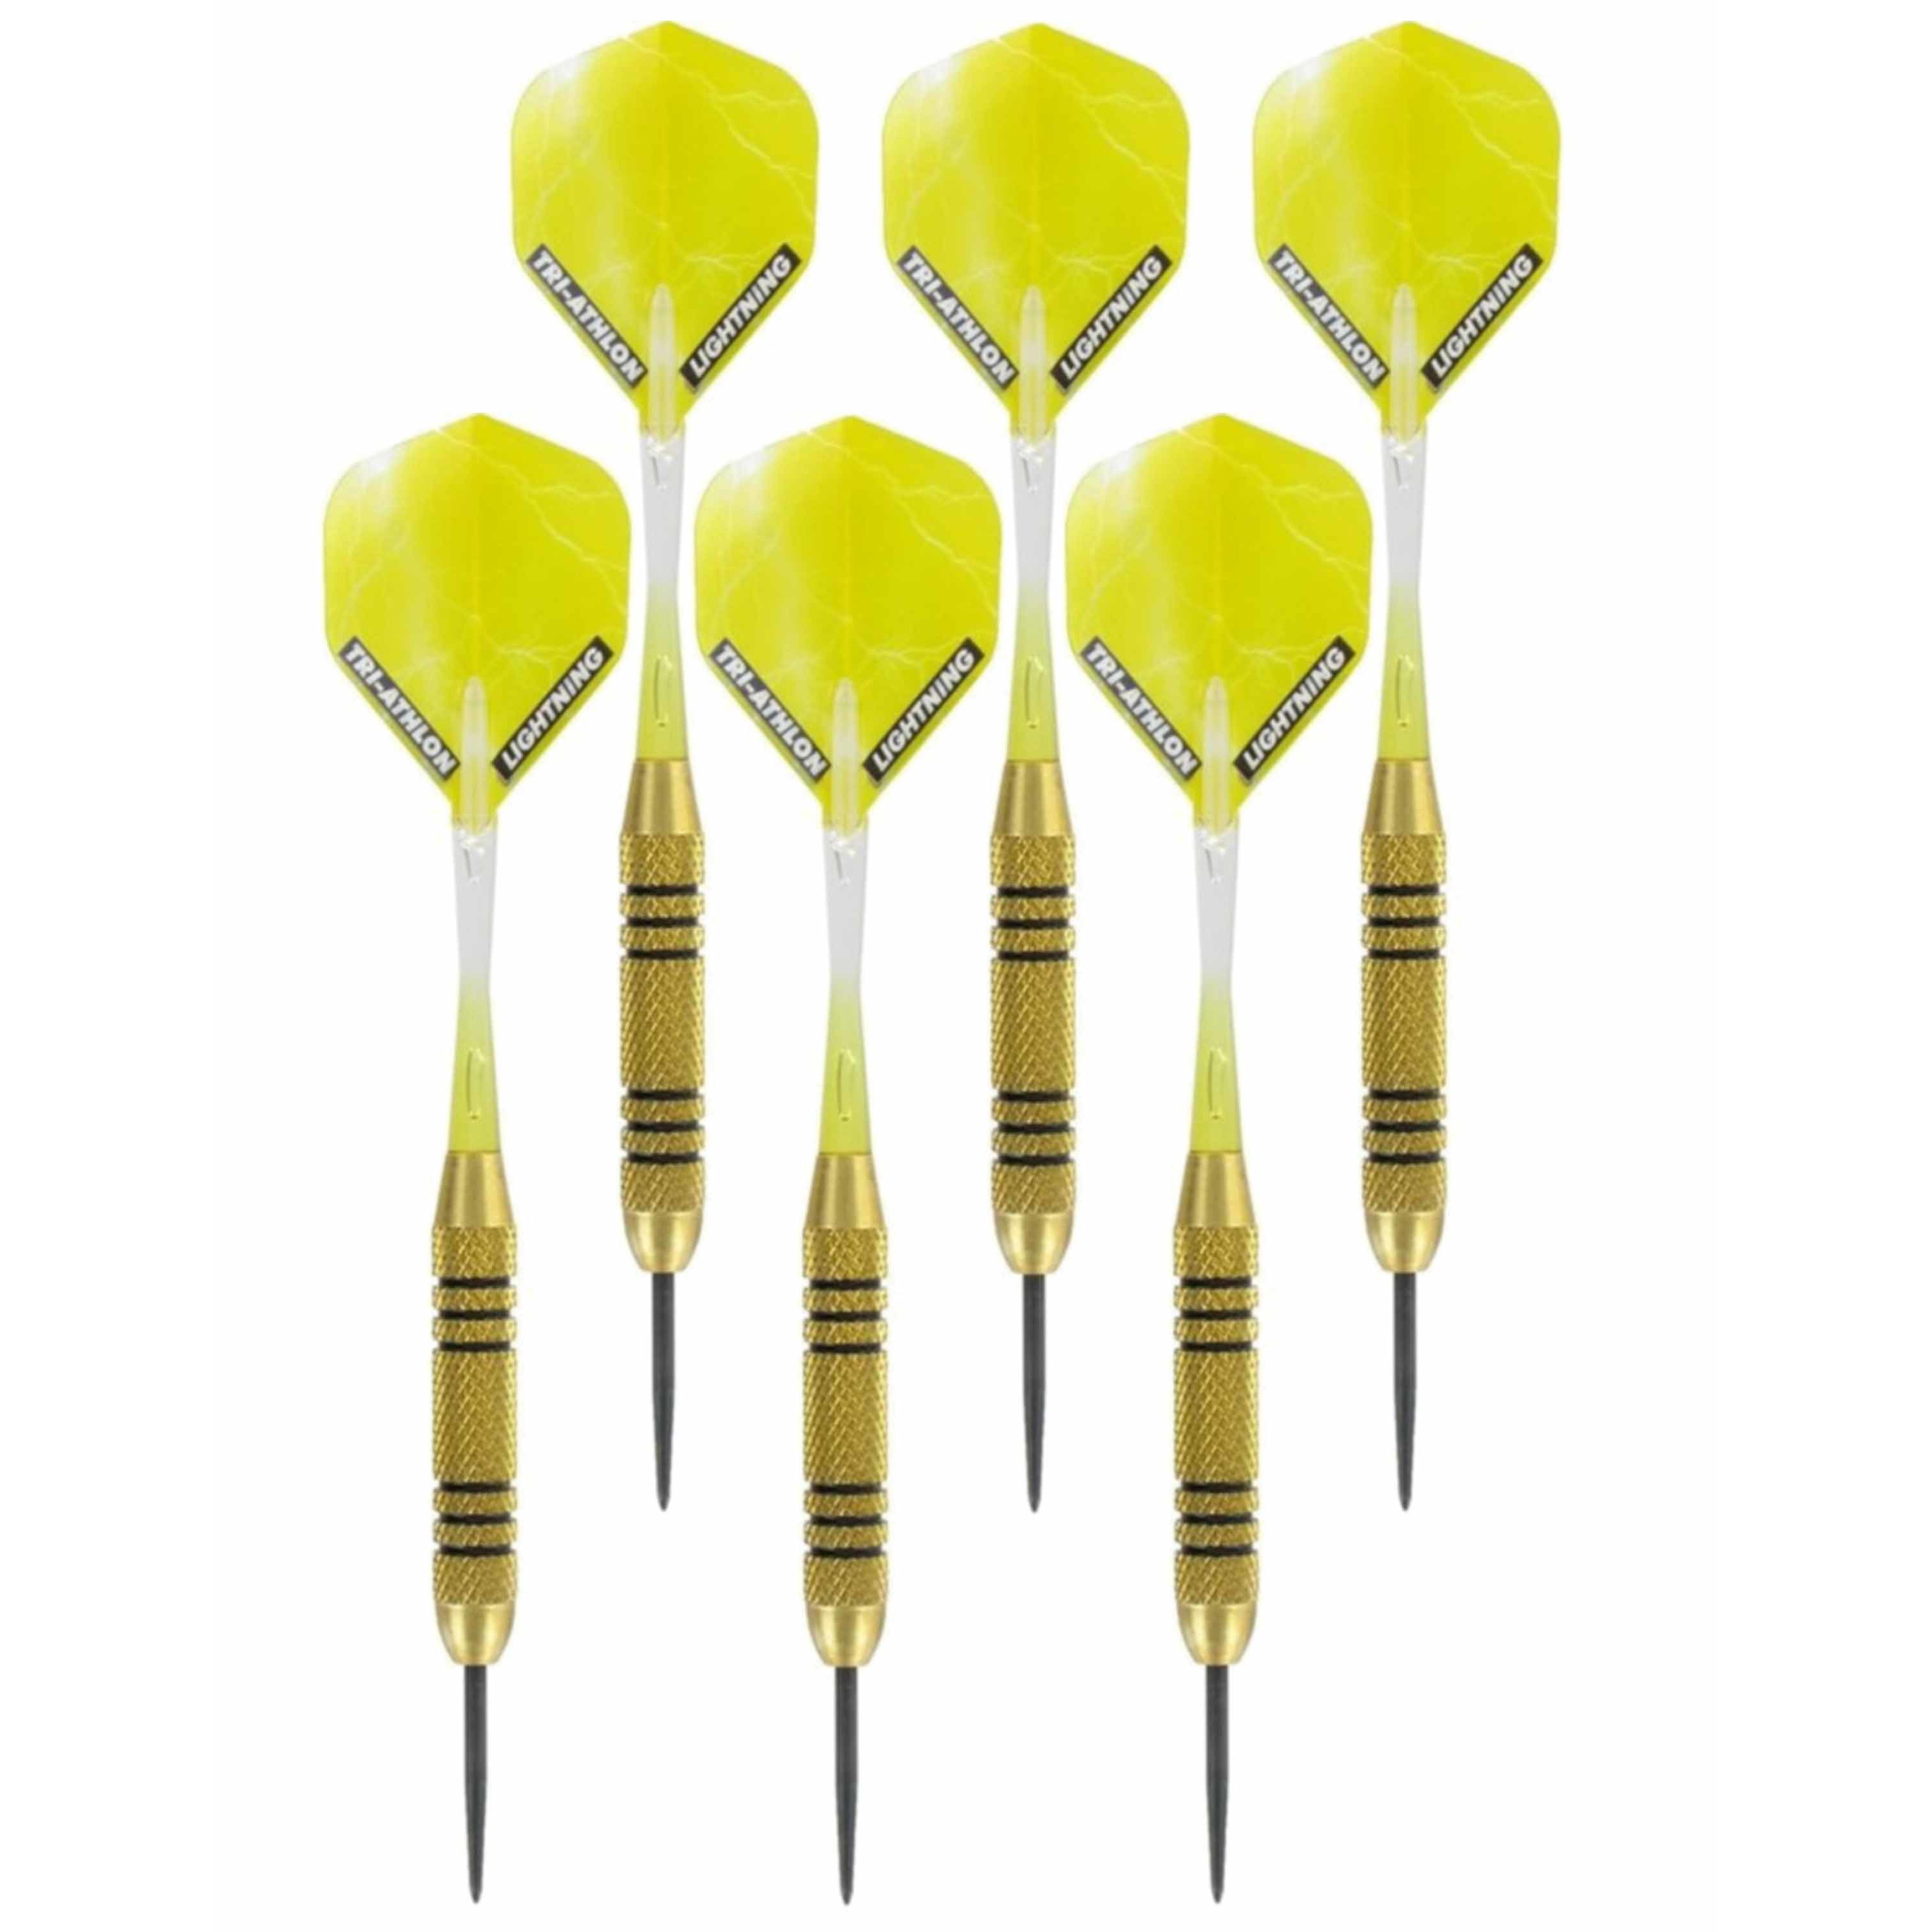 2x Set van dartpijltjes Speedy Yellow Brass met Metallic Lightning flites 23 grams